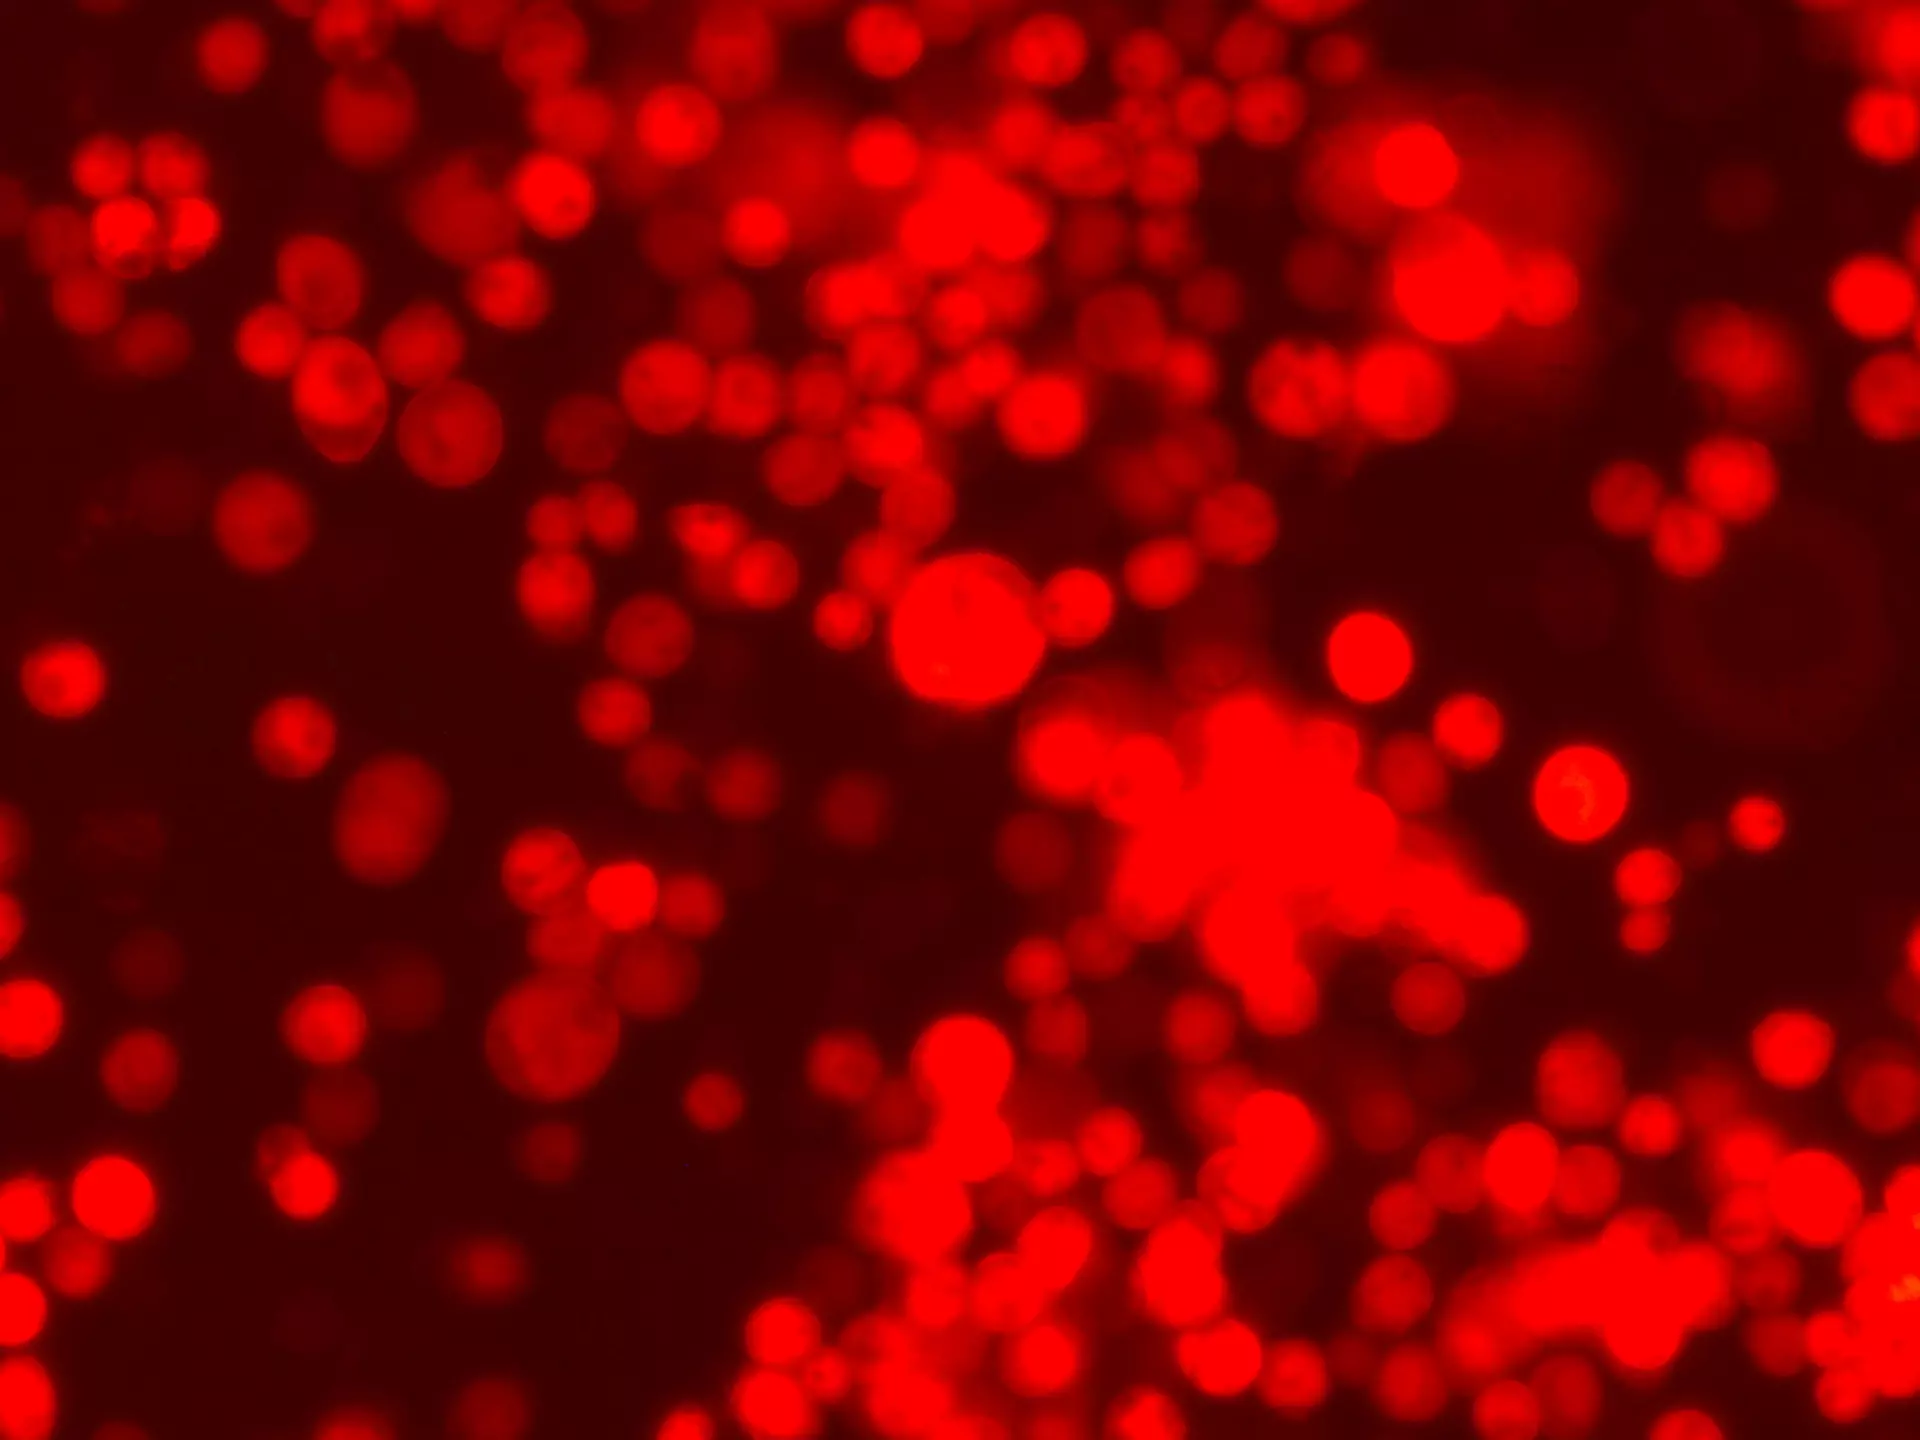 Abbildung von rot leuchtenden Insektenzellen. Für das Leuchten ist ein exprimiertes Reportergen (DsRed) verantwortlich.